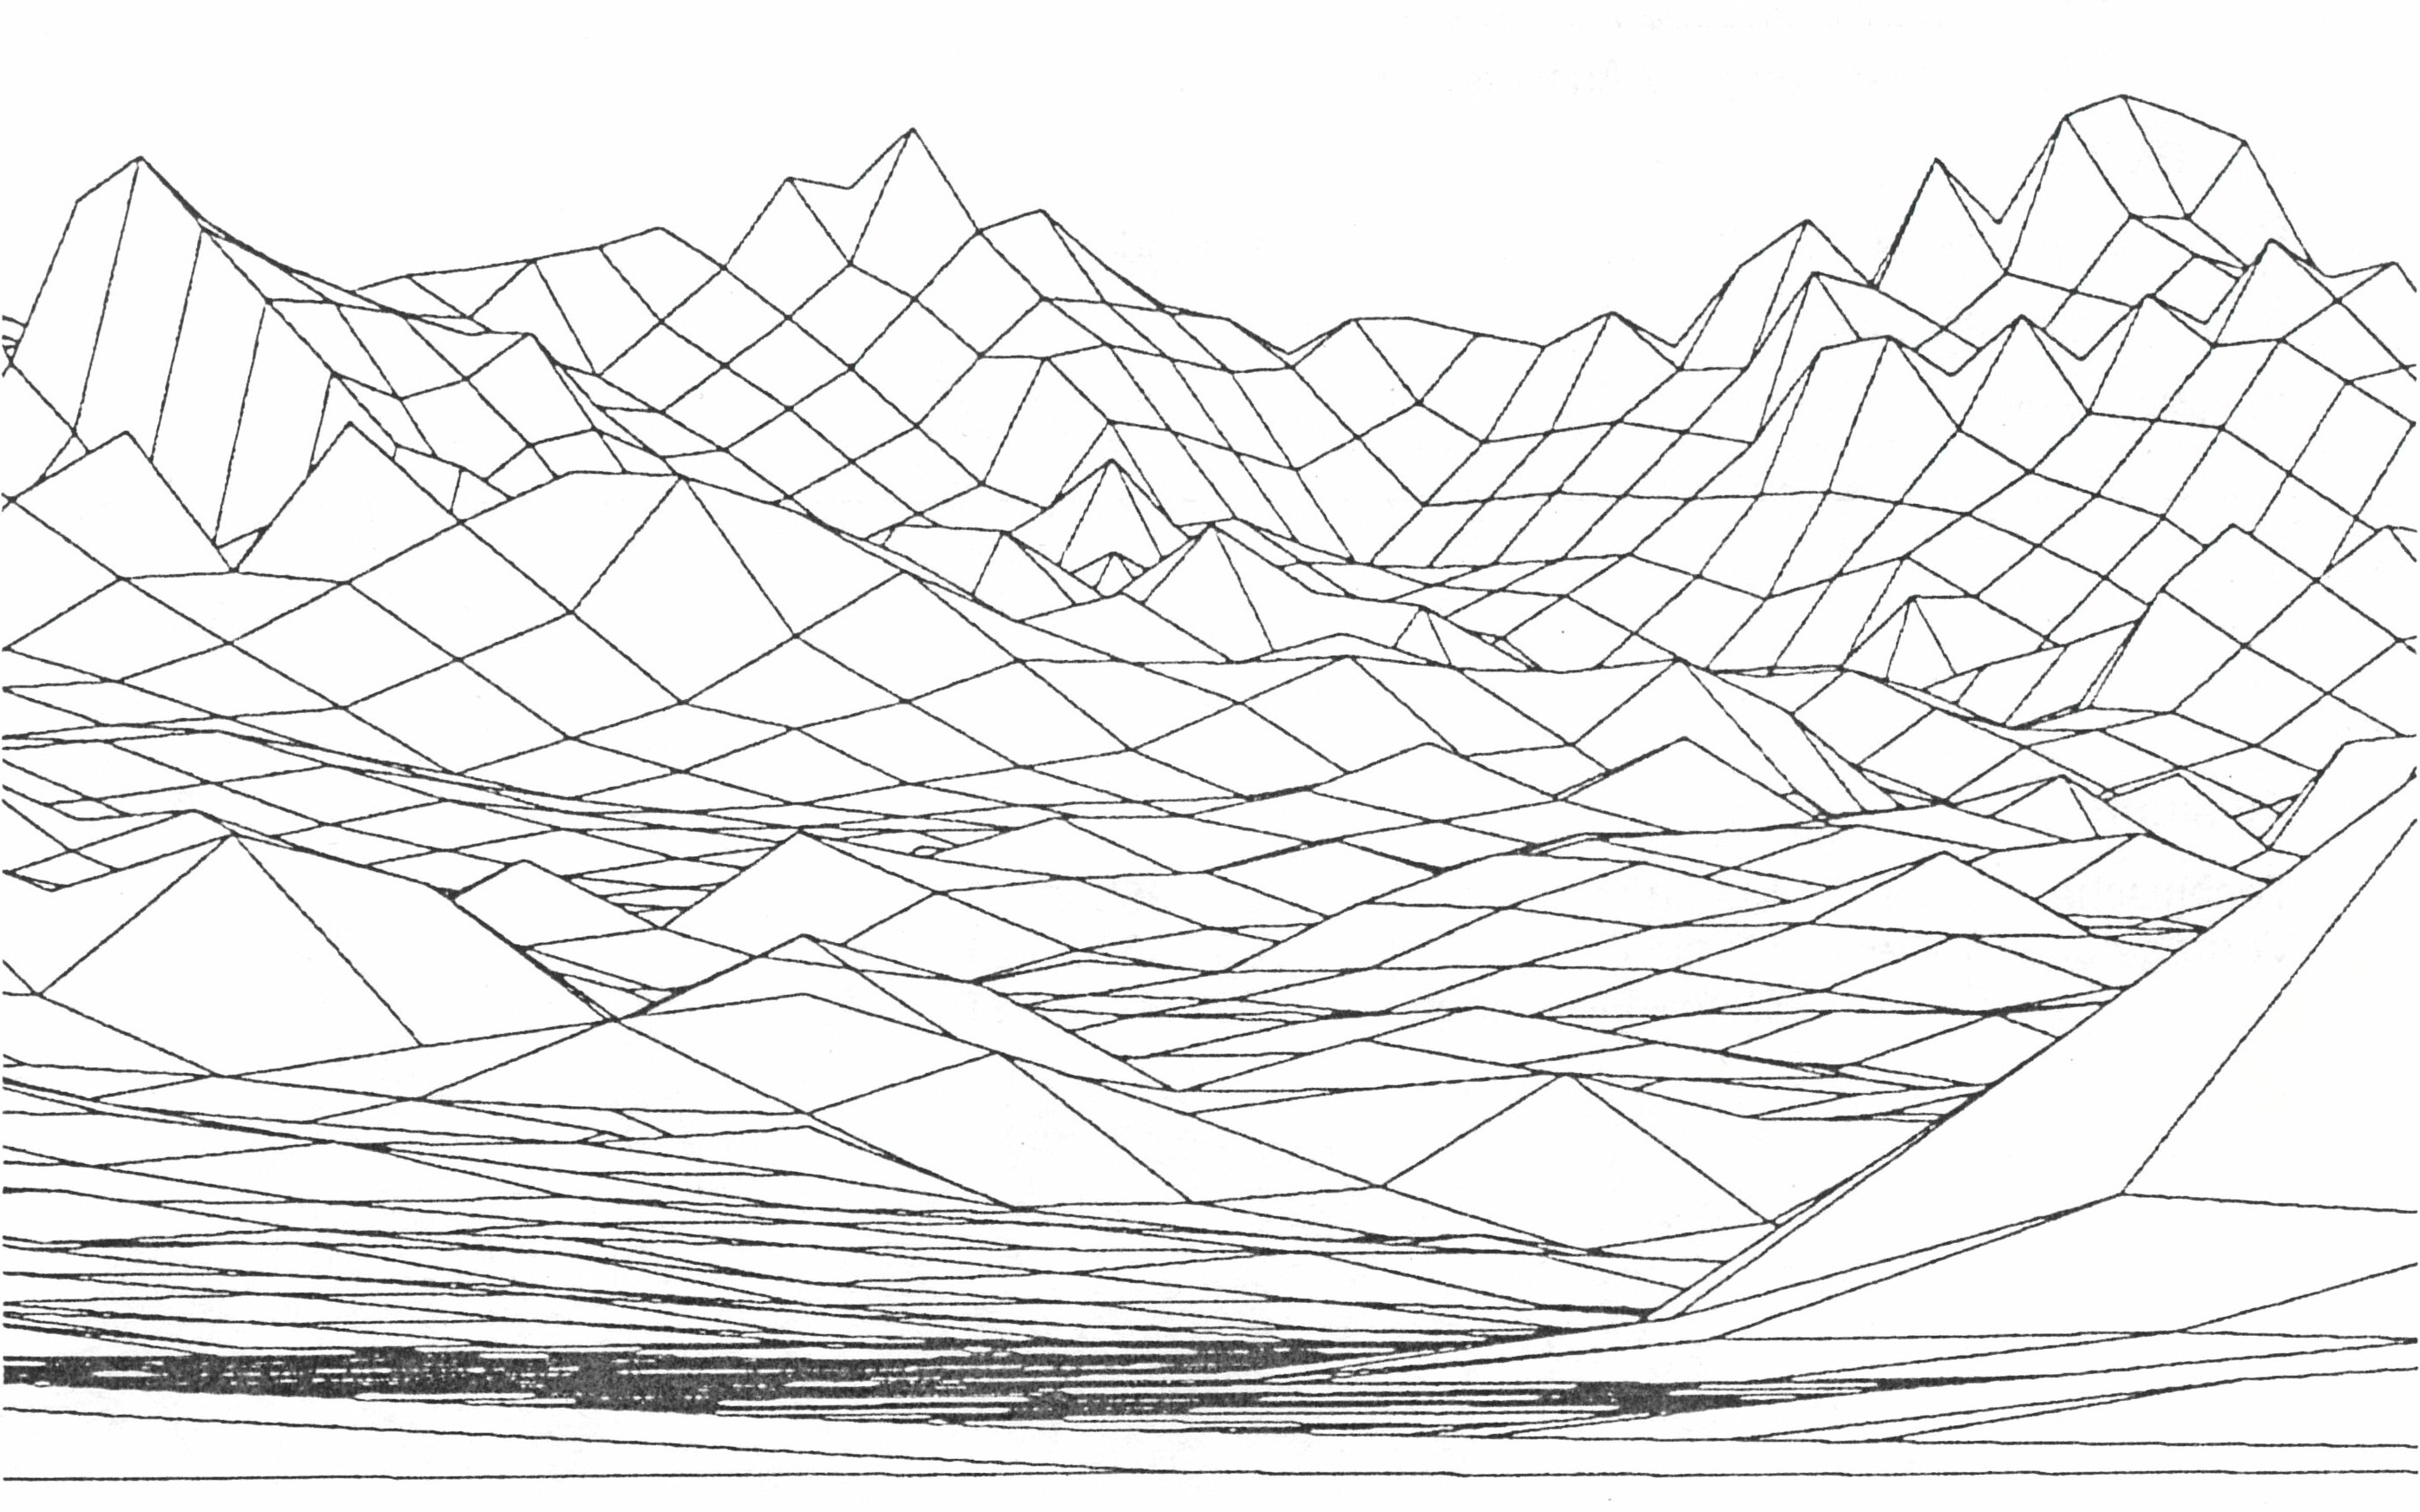 Panoramische Darstellung von Eiger, Mönch und Jungfrau in einem grobmaschigen digitalen Gitterraster.